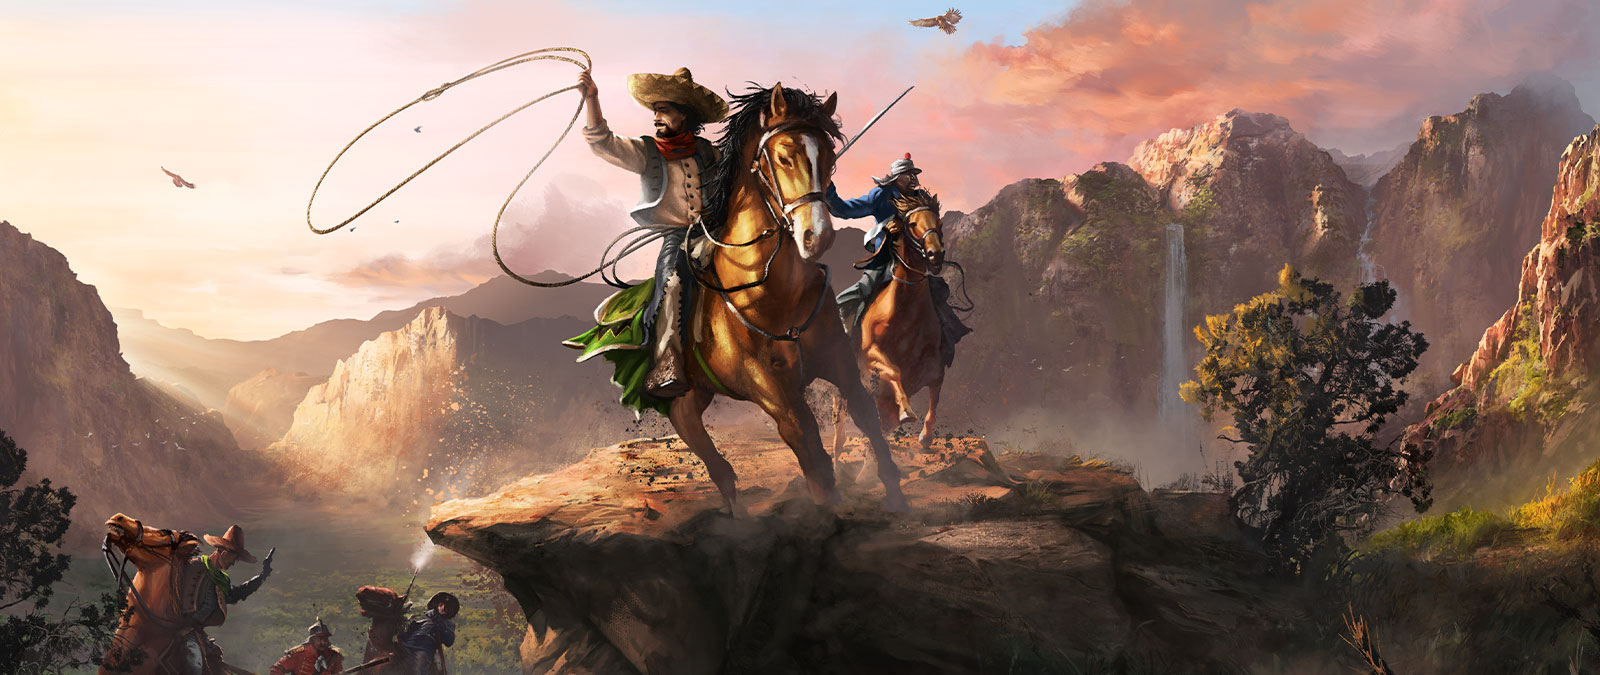 Dve postavy sedia na koňoch vo veľkom údolí s lasom a mečom.